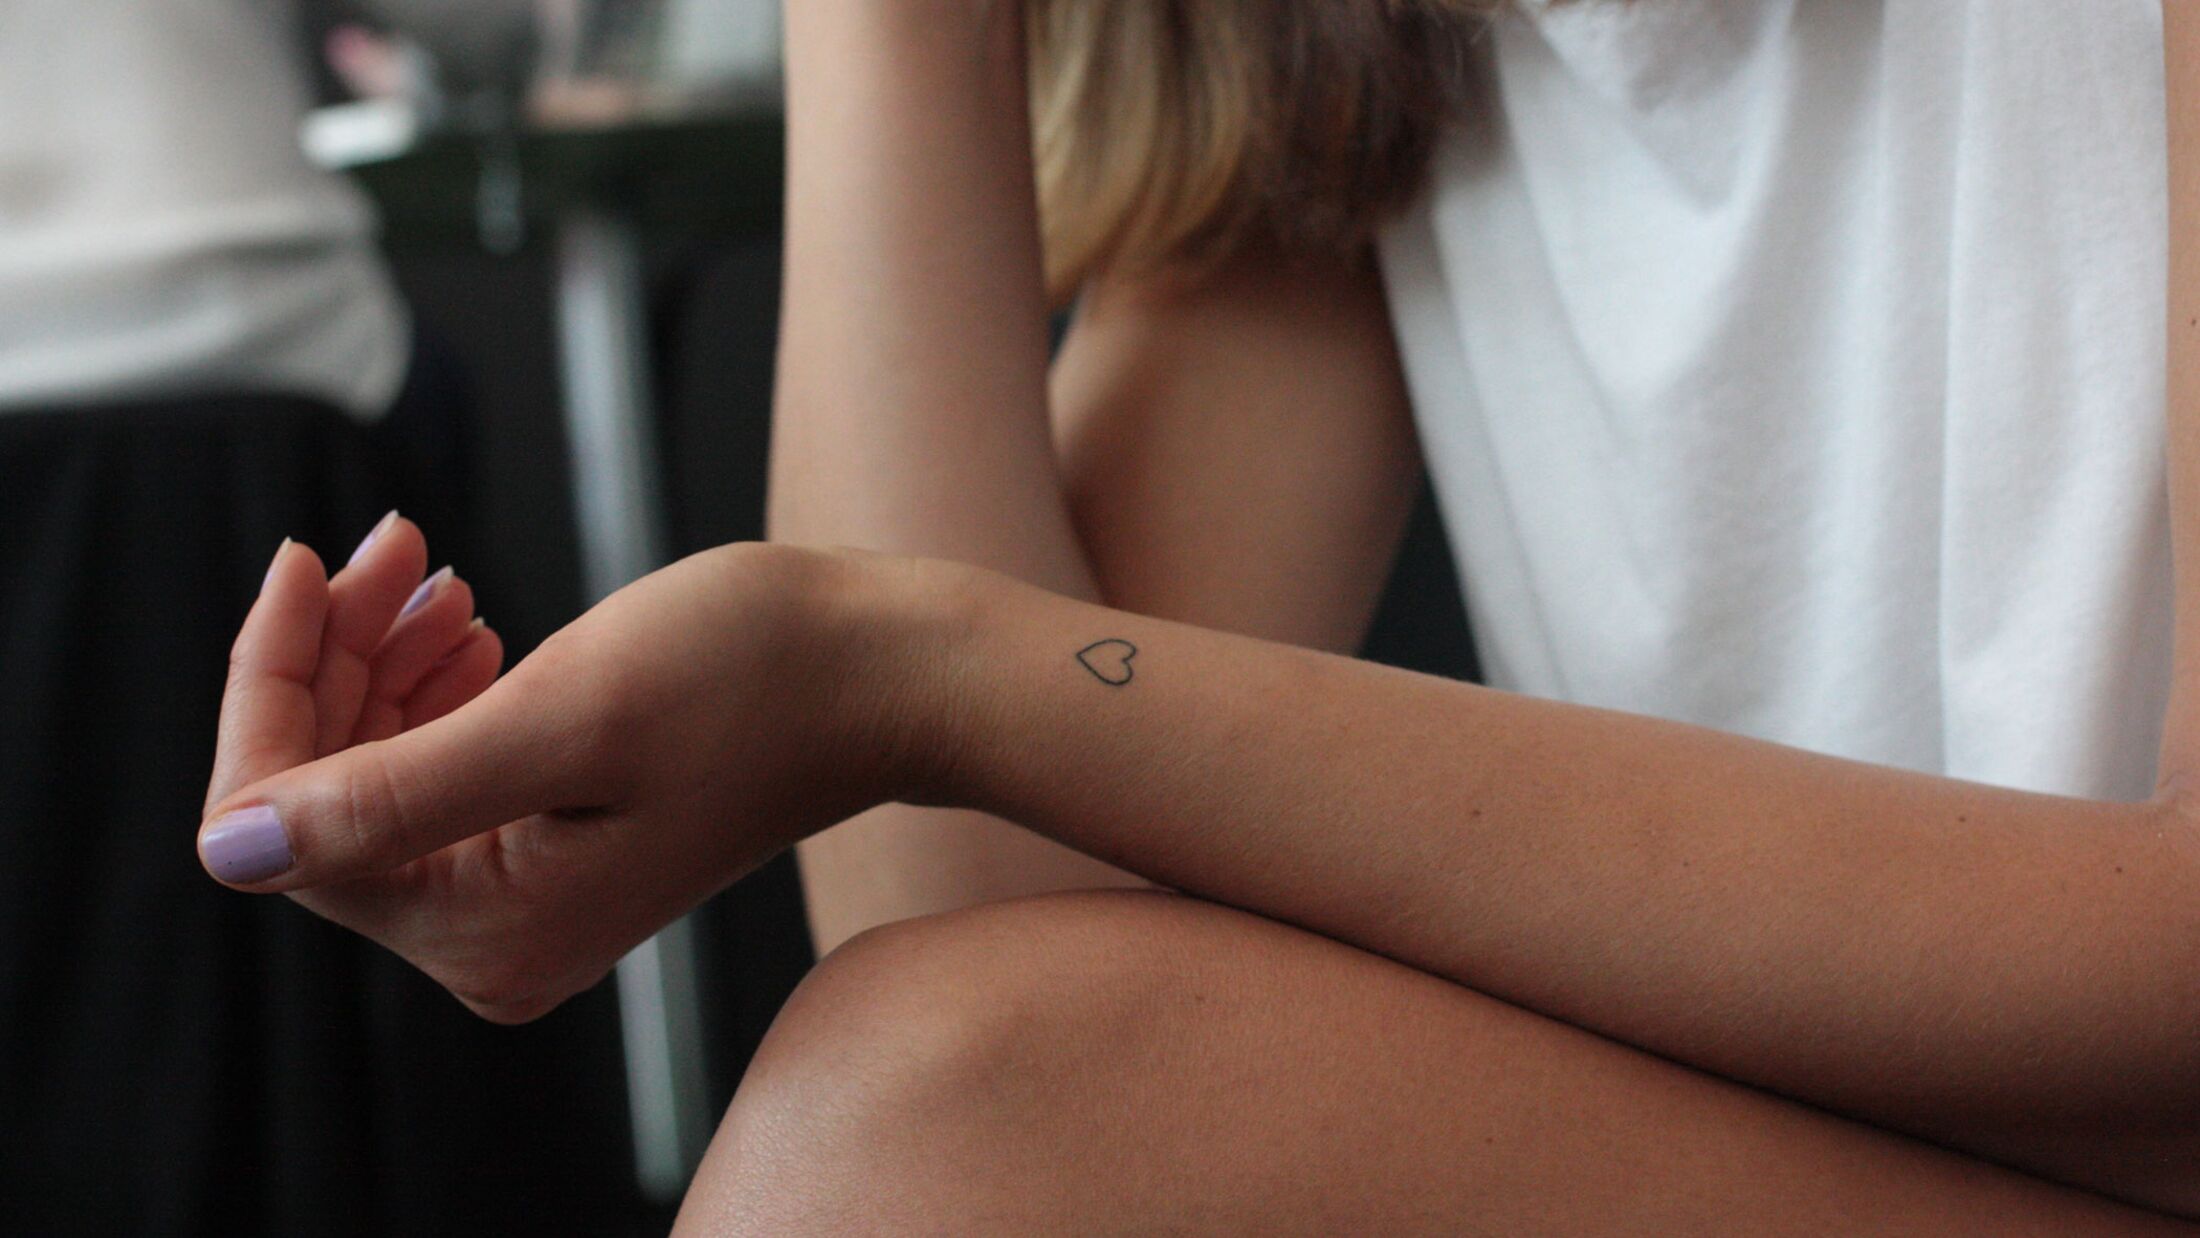 Kleine Tattoos: 9 schöne Ideen und ihre Bedeutung